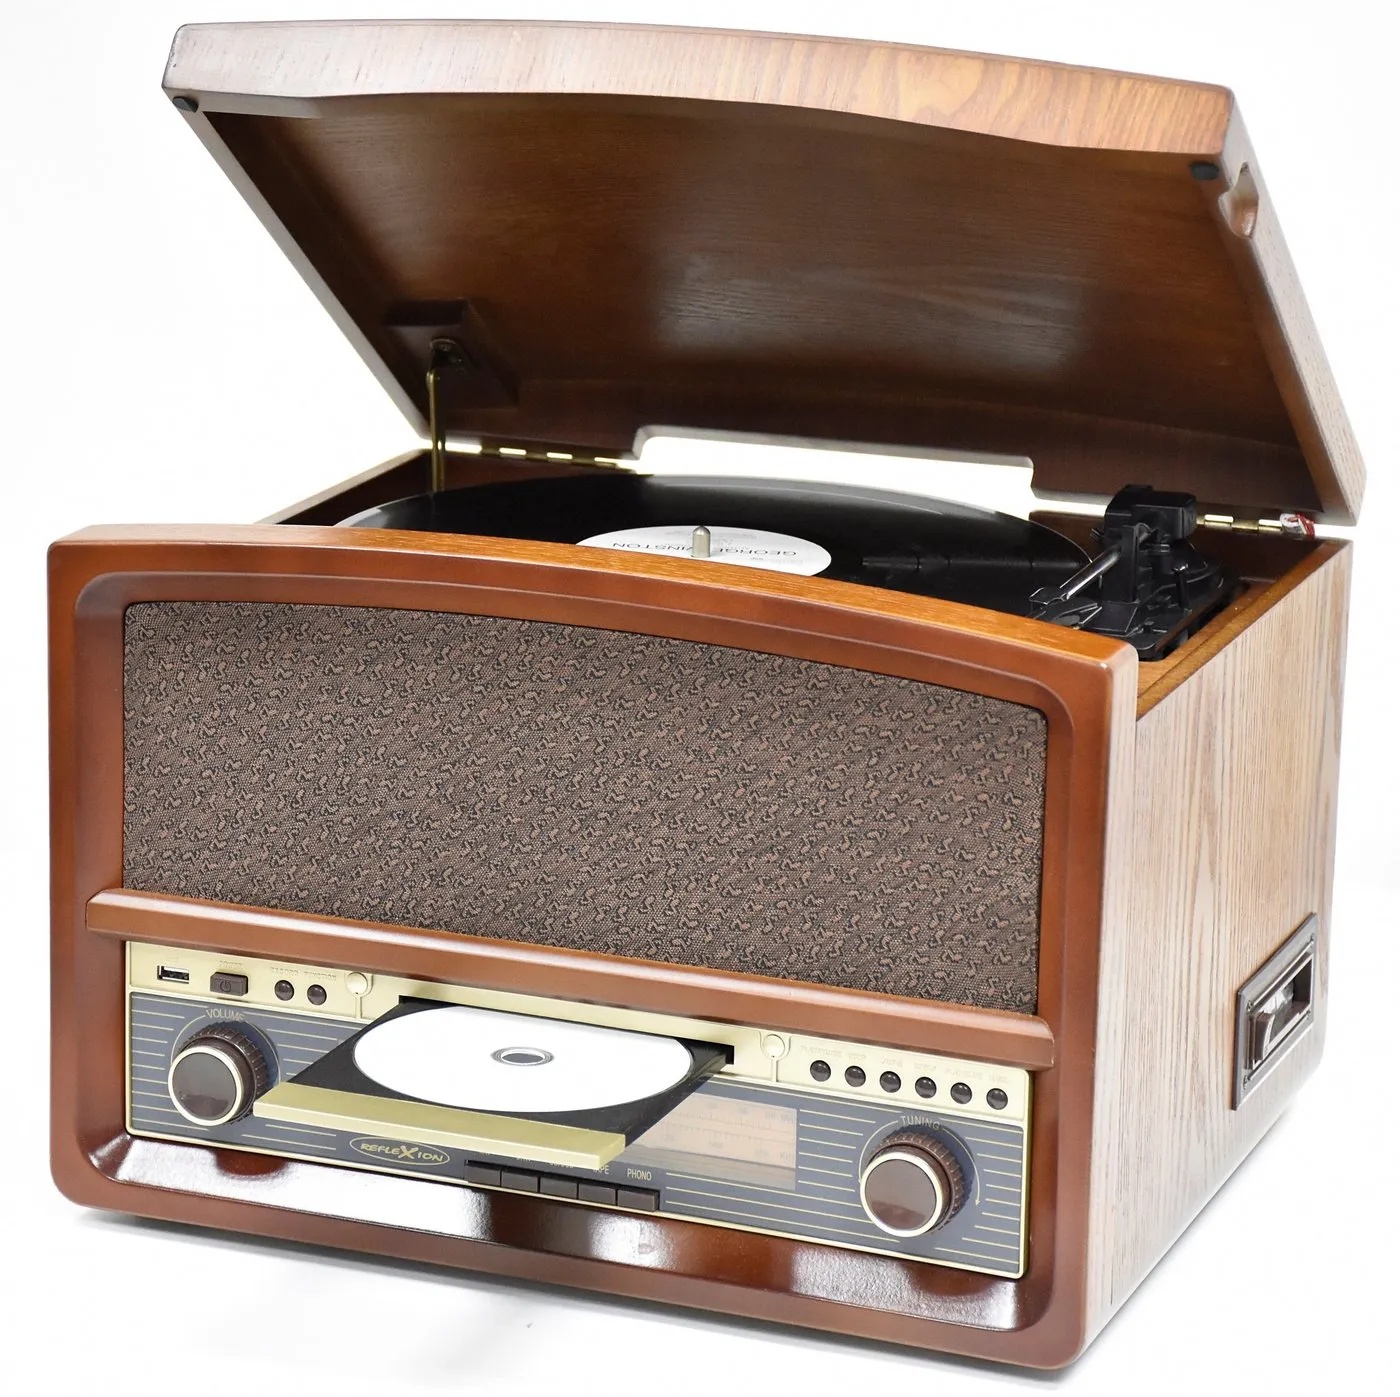 Reflexion HIF1937A Multifunktionsspieler (Retro Stereo-Anlage mit Plattenspieler, Kassette, CD-Player und Radio) braun